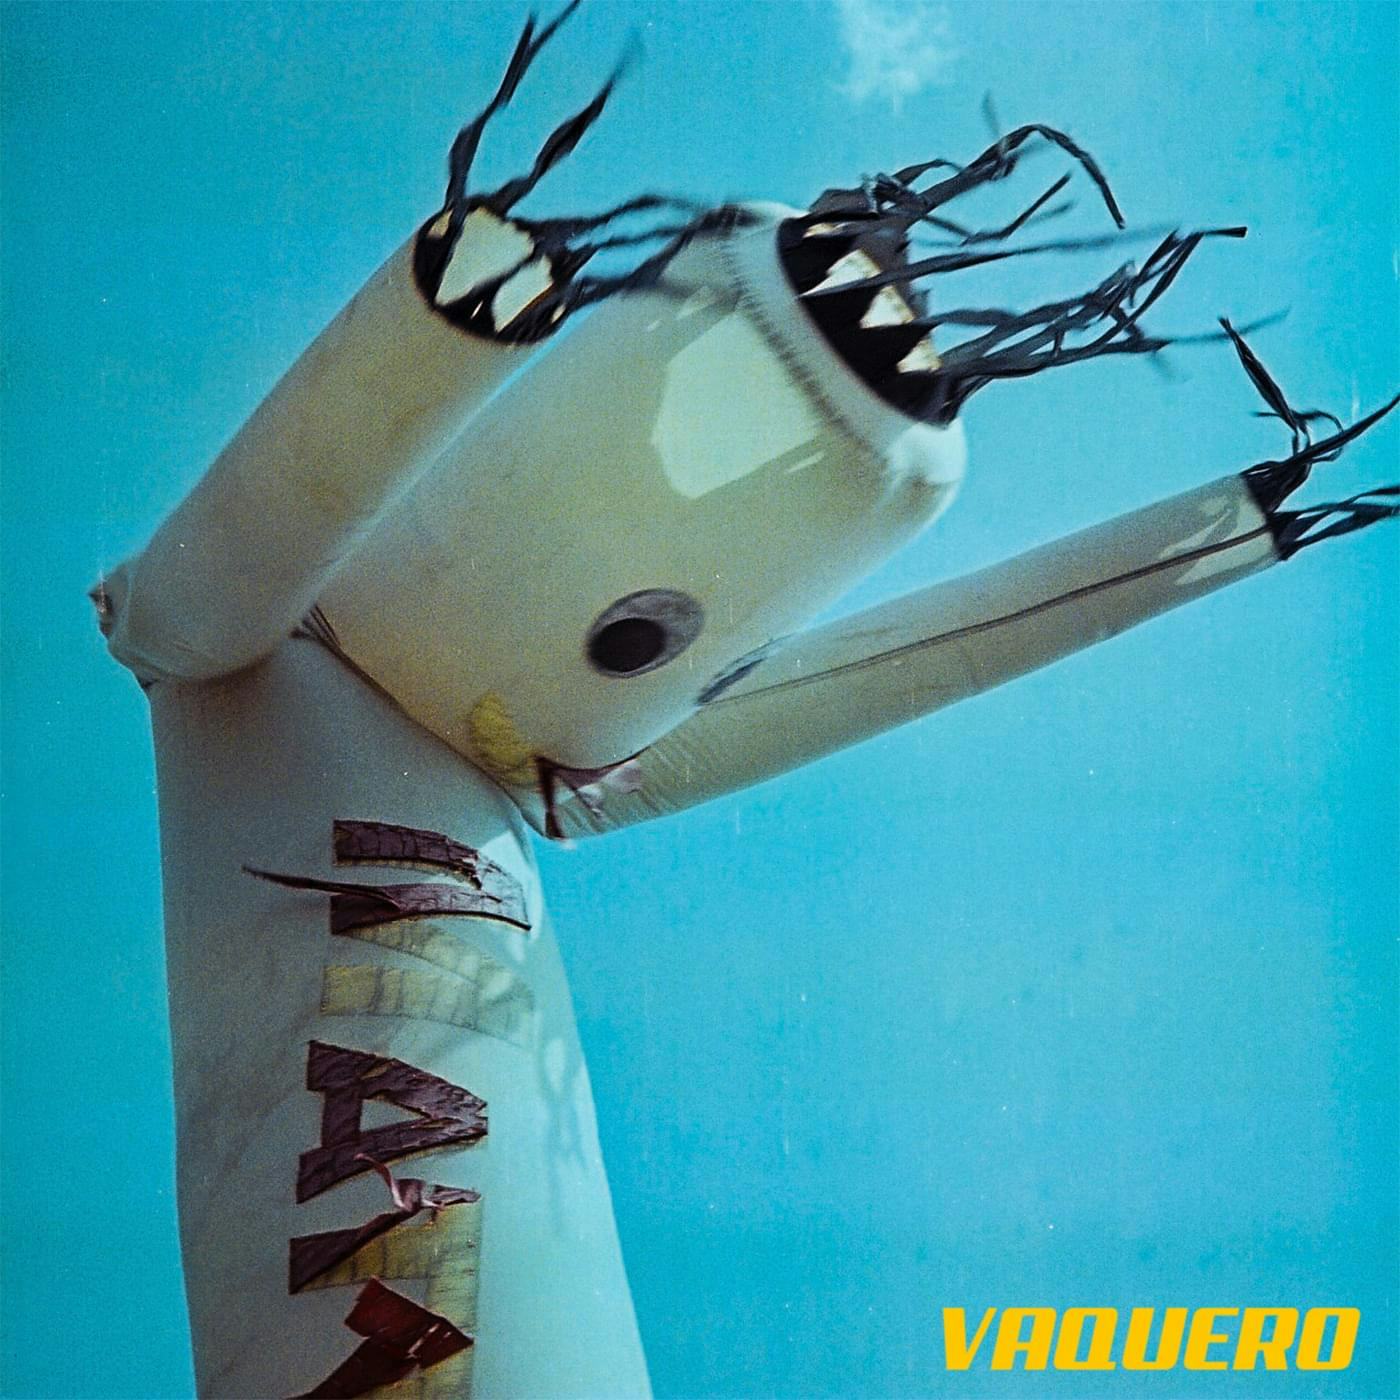 Cover art for Vaquero by Matt FX